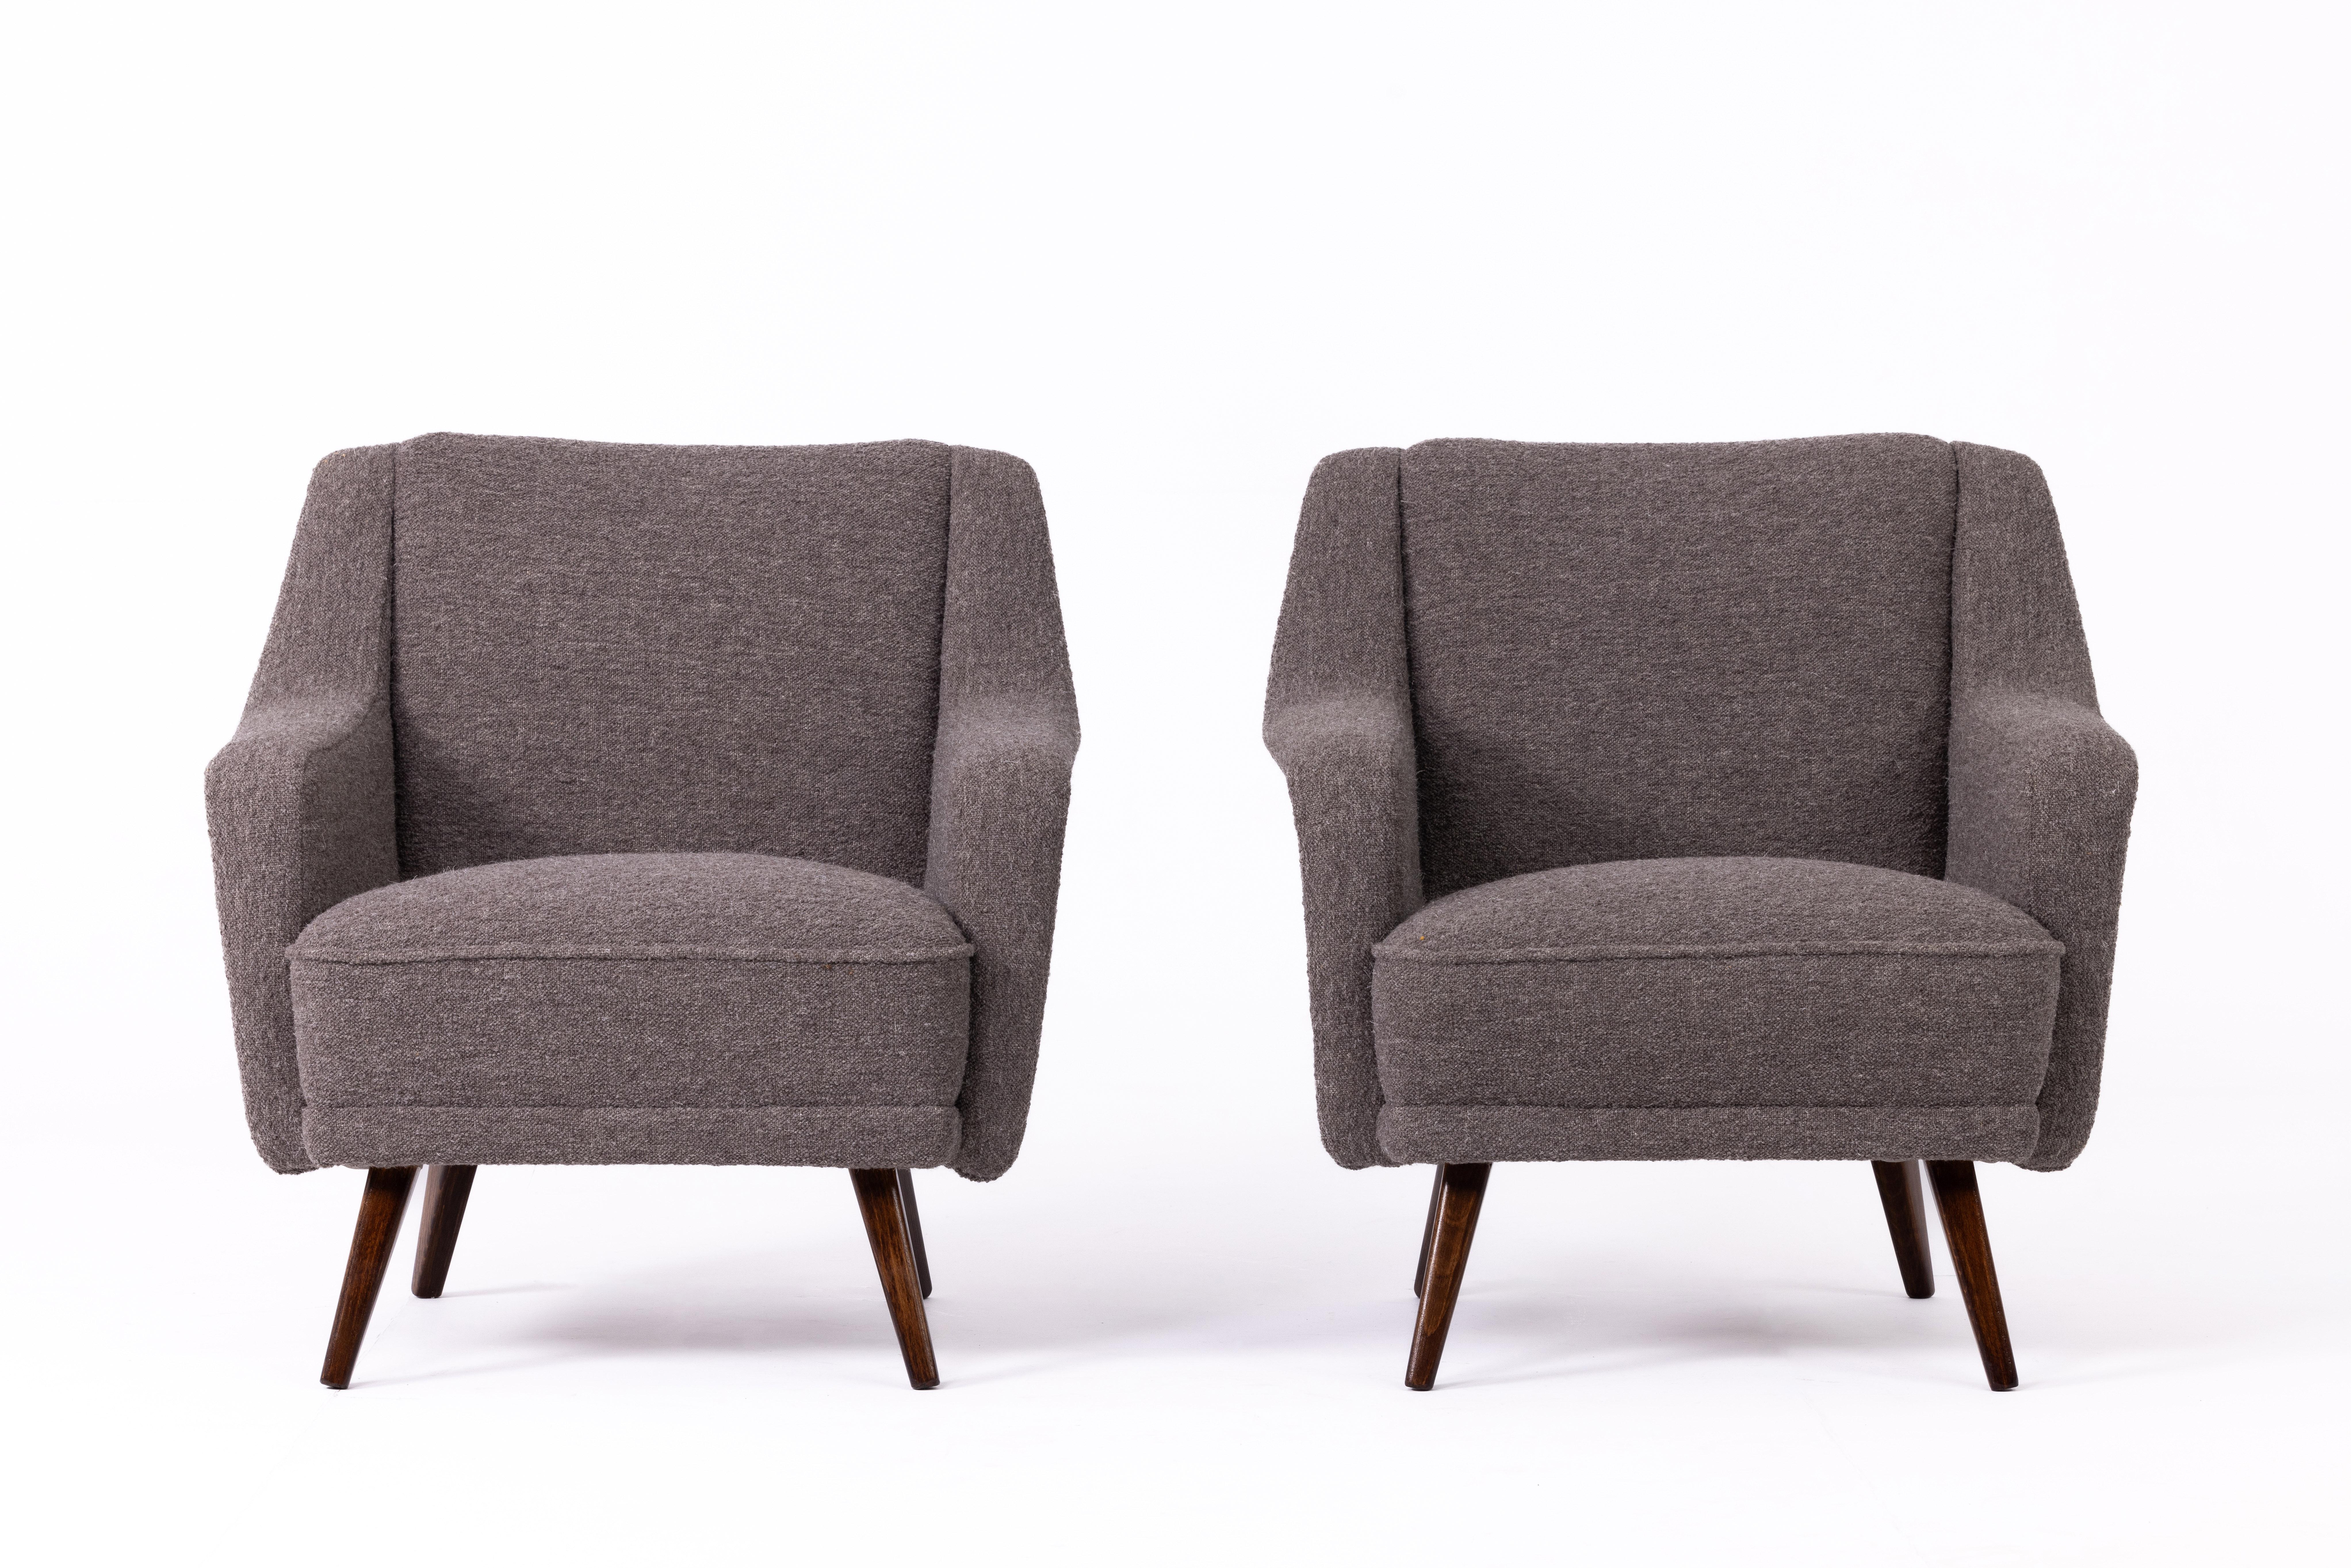 Paar österreichische Sessel, 1950er Jahre, vollständig restauriert, Beine aus Nussbaumholz, neu gepolstert mit hochwertigem Leinenstoff